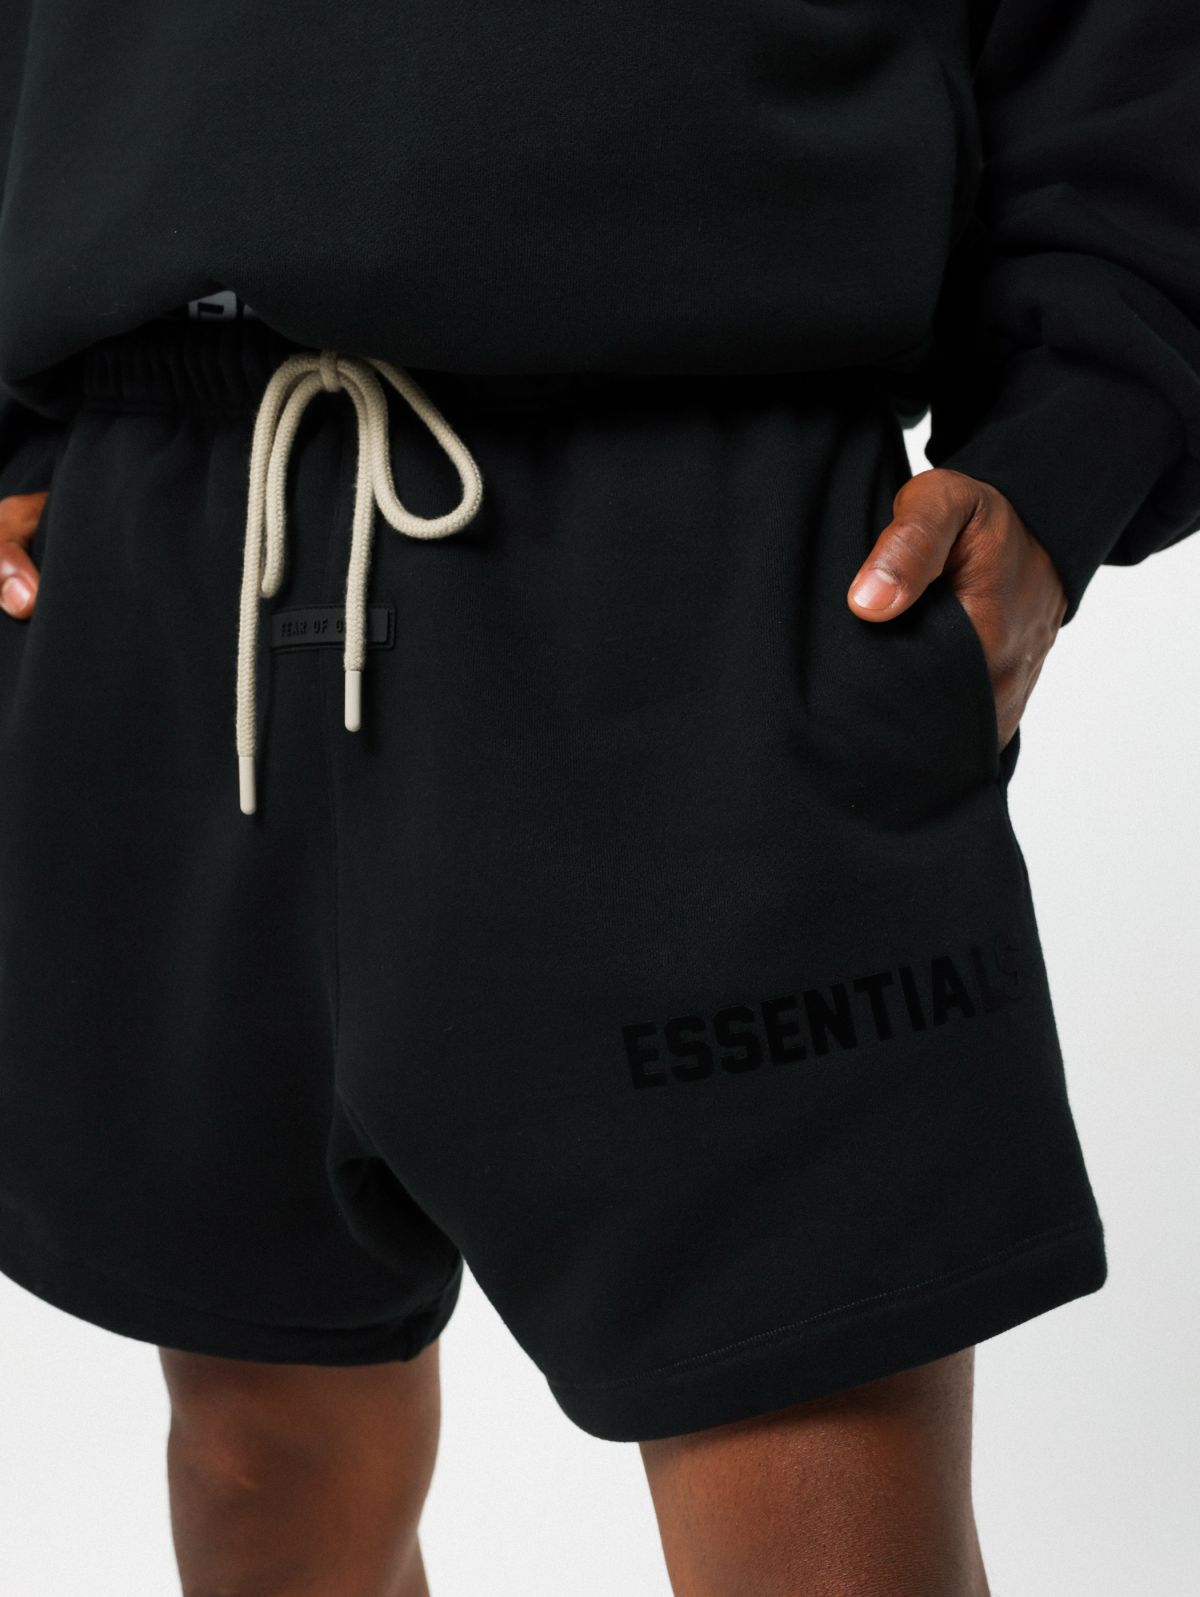  מכנסי ברמודה עם הדפס לוגו של ESSENTIALS